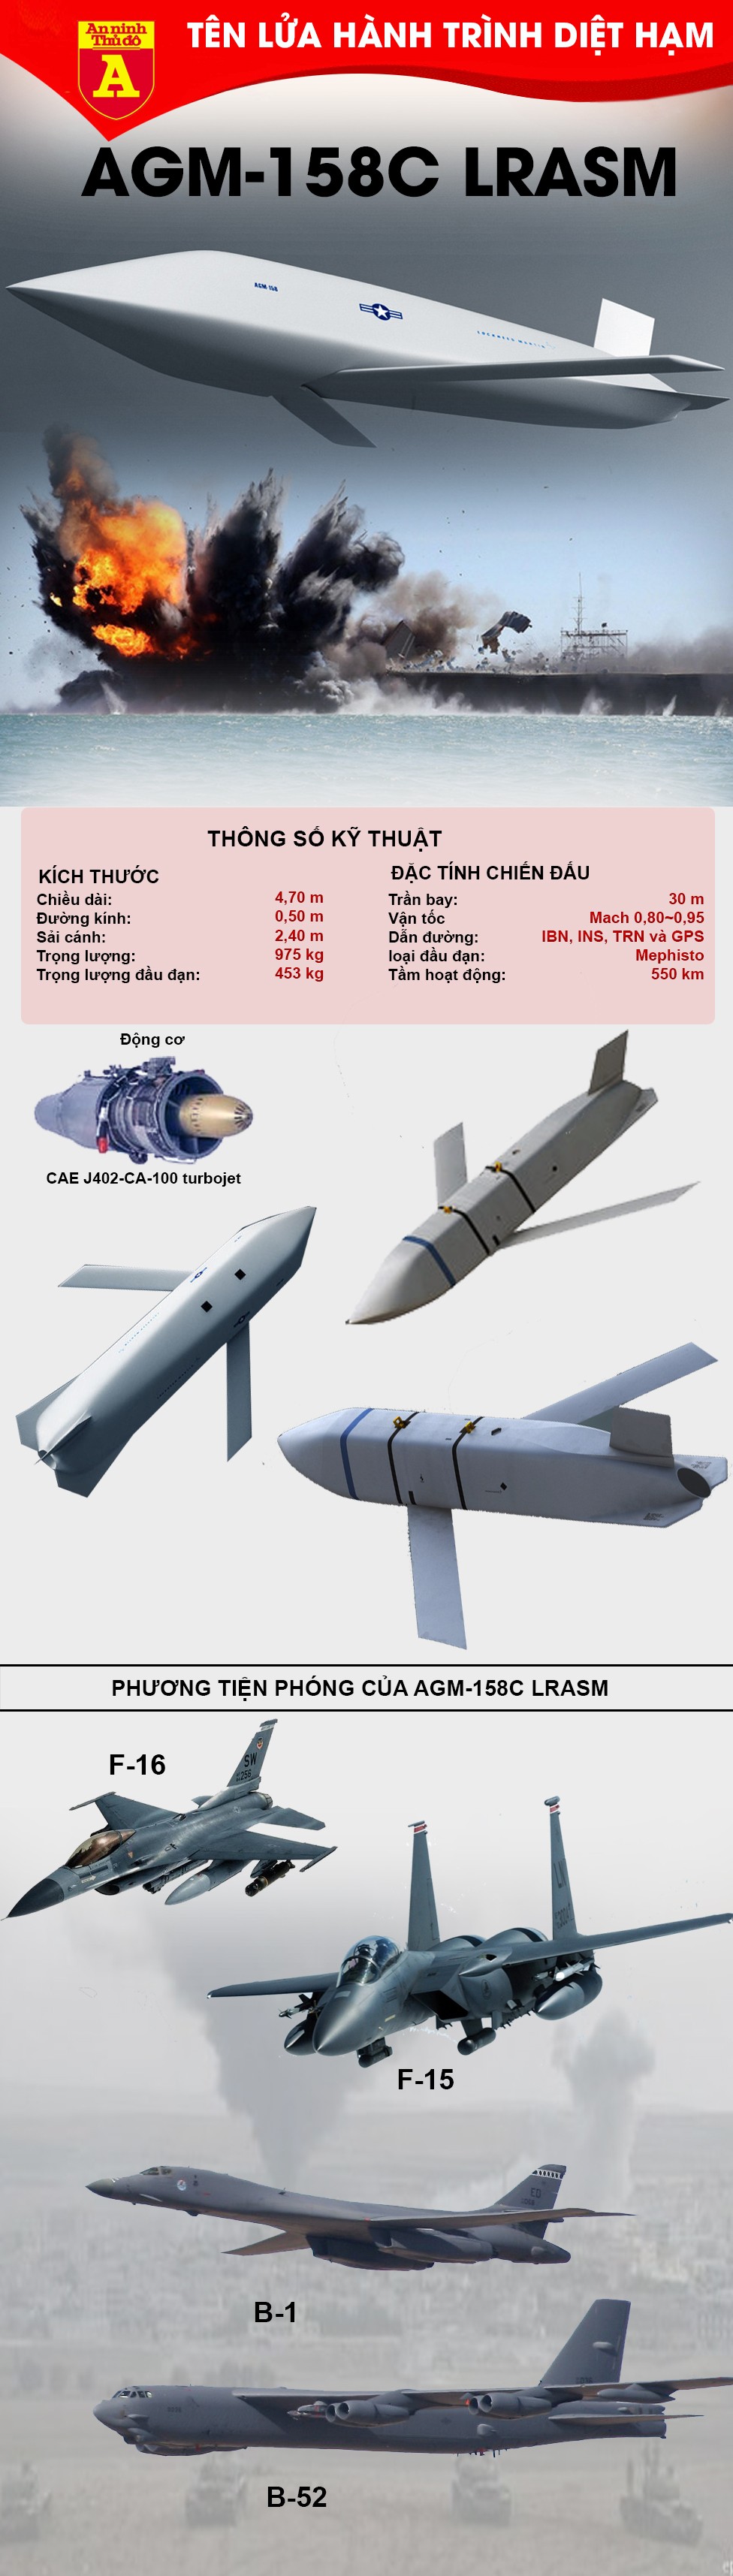 [Infographic] Mỹ biên chế "móng vuốt quỷ biển" LRASM, chỉ một phát bắn là nhấn chìm tàu chiến 10.000 tấn ảnh 2